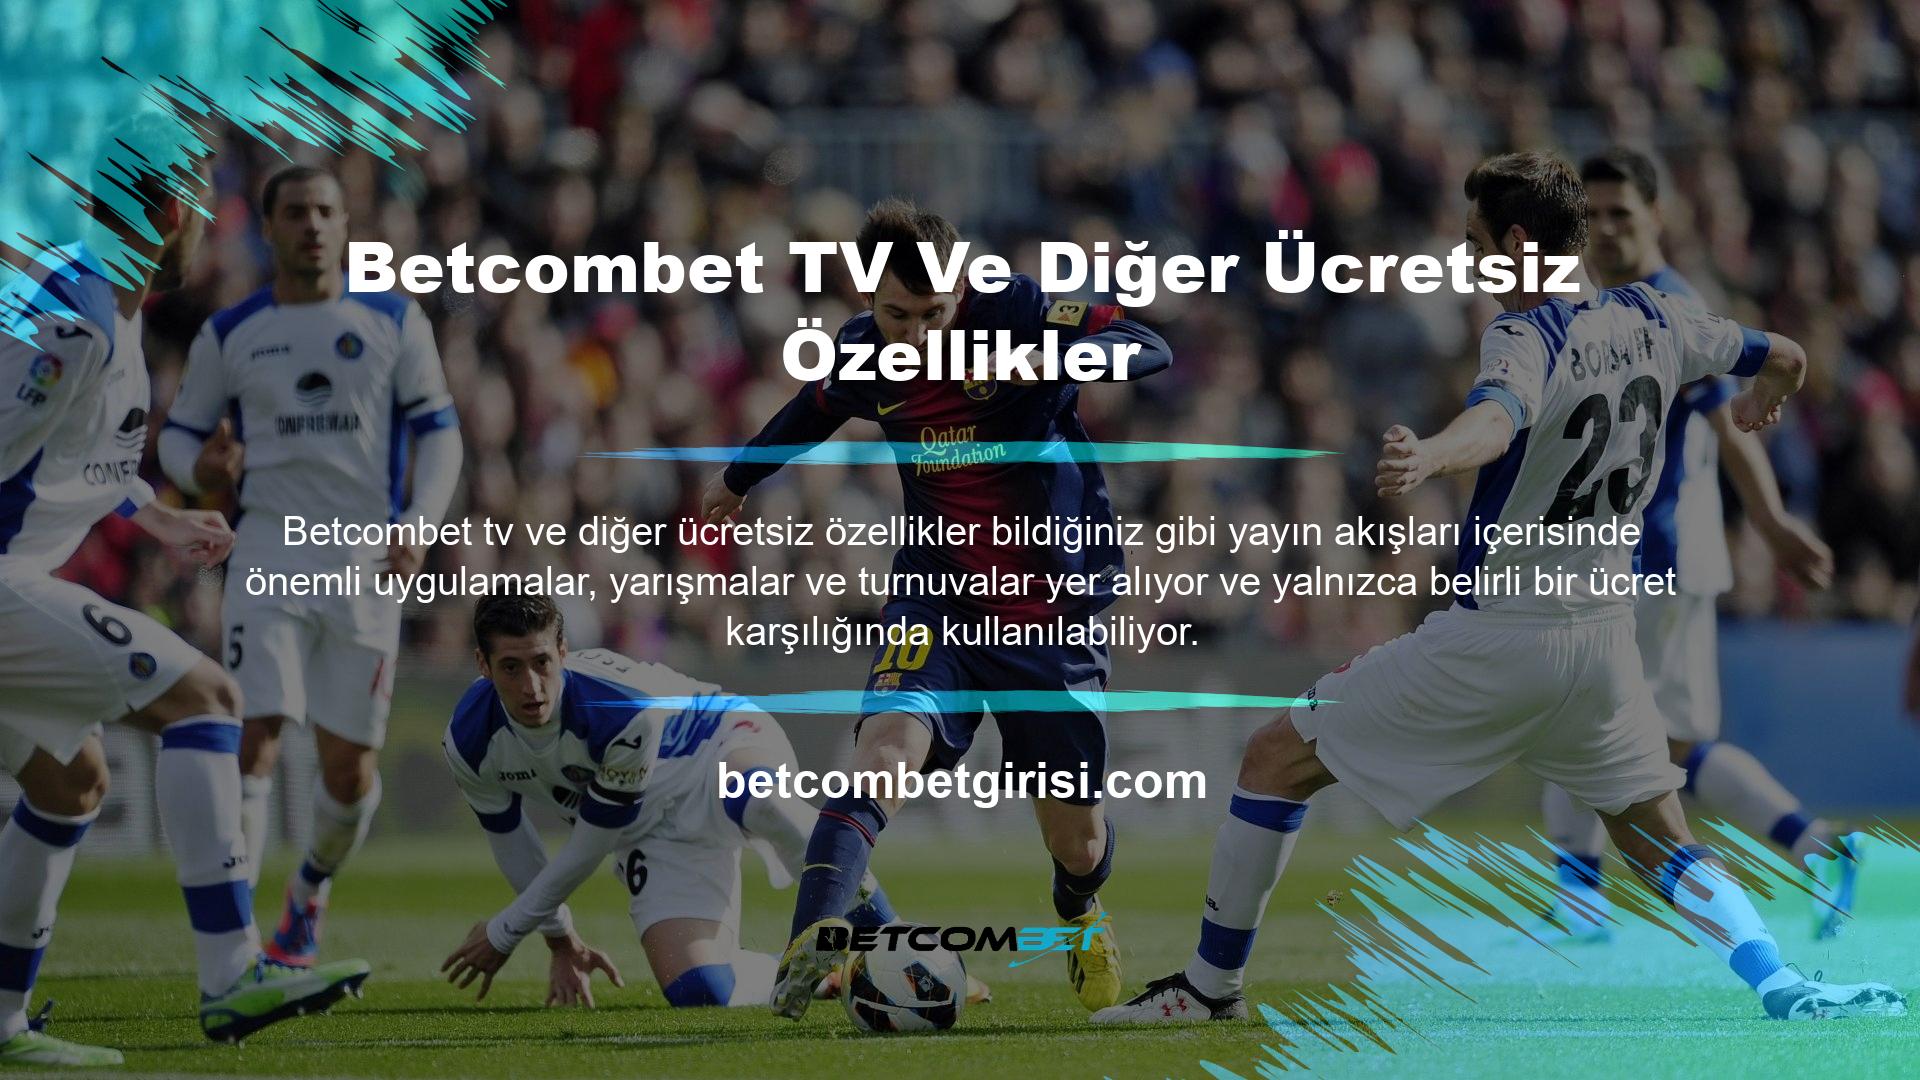 Web sitemizde Betcombet TV'deki en kaliteli kanalları ve oyunları ücretsiz izleyebilir, donmadan oyun keyfi yaşayabilirsiniz